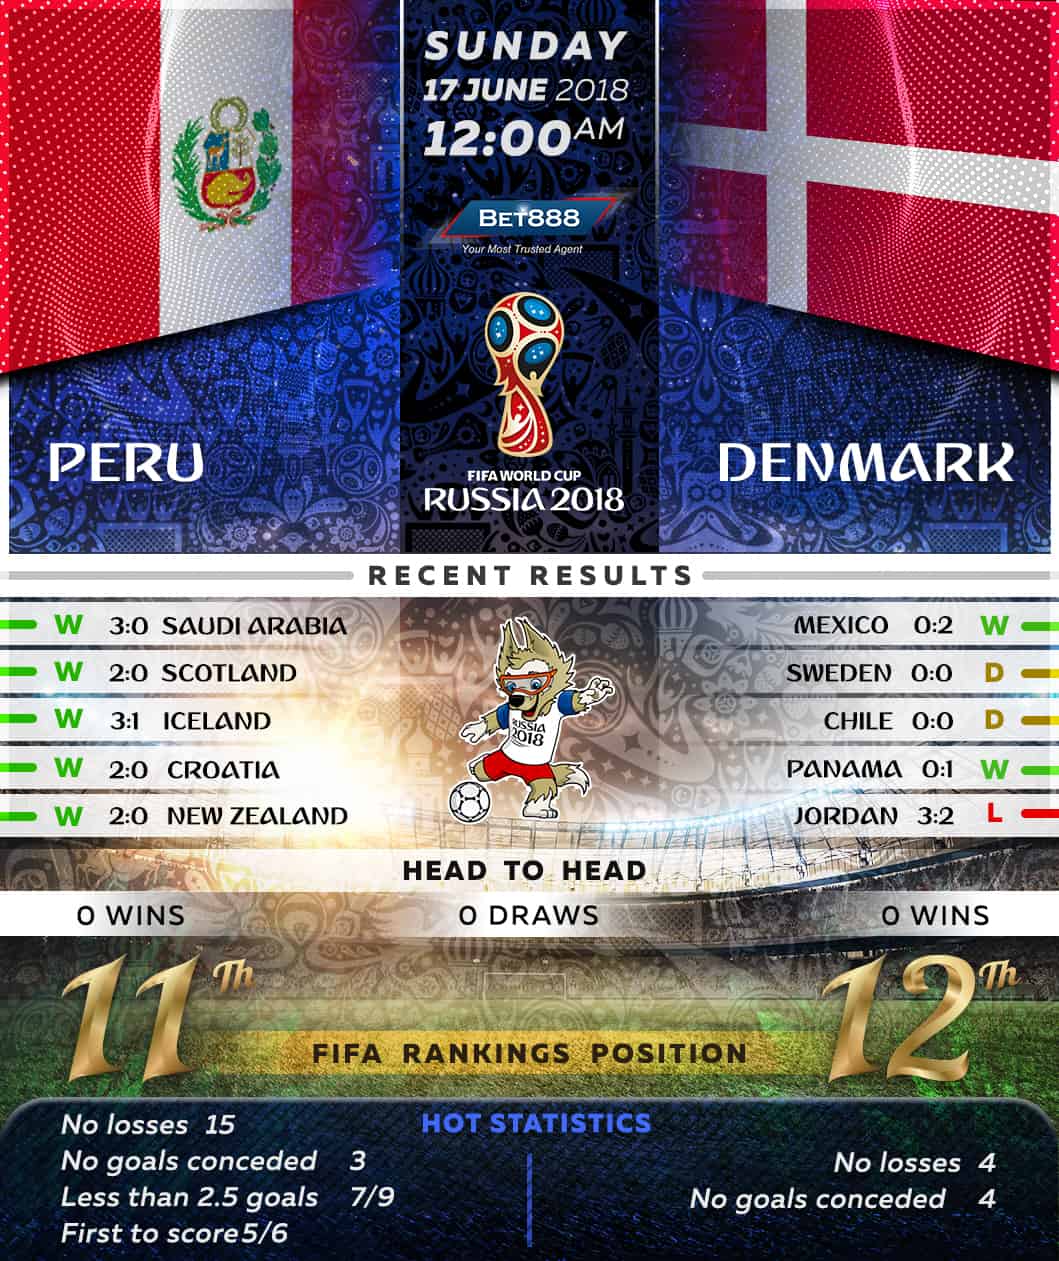 Peru vs Denmark 17/06/18